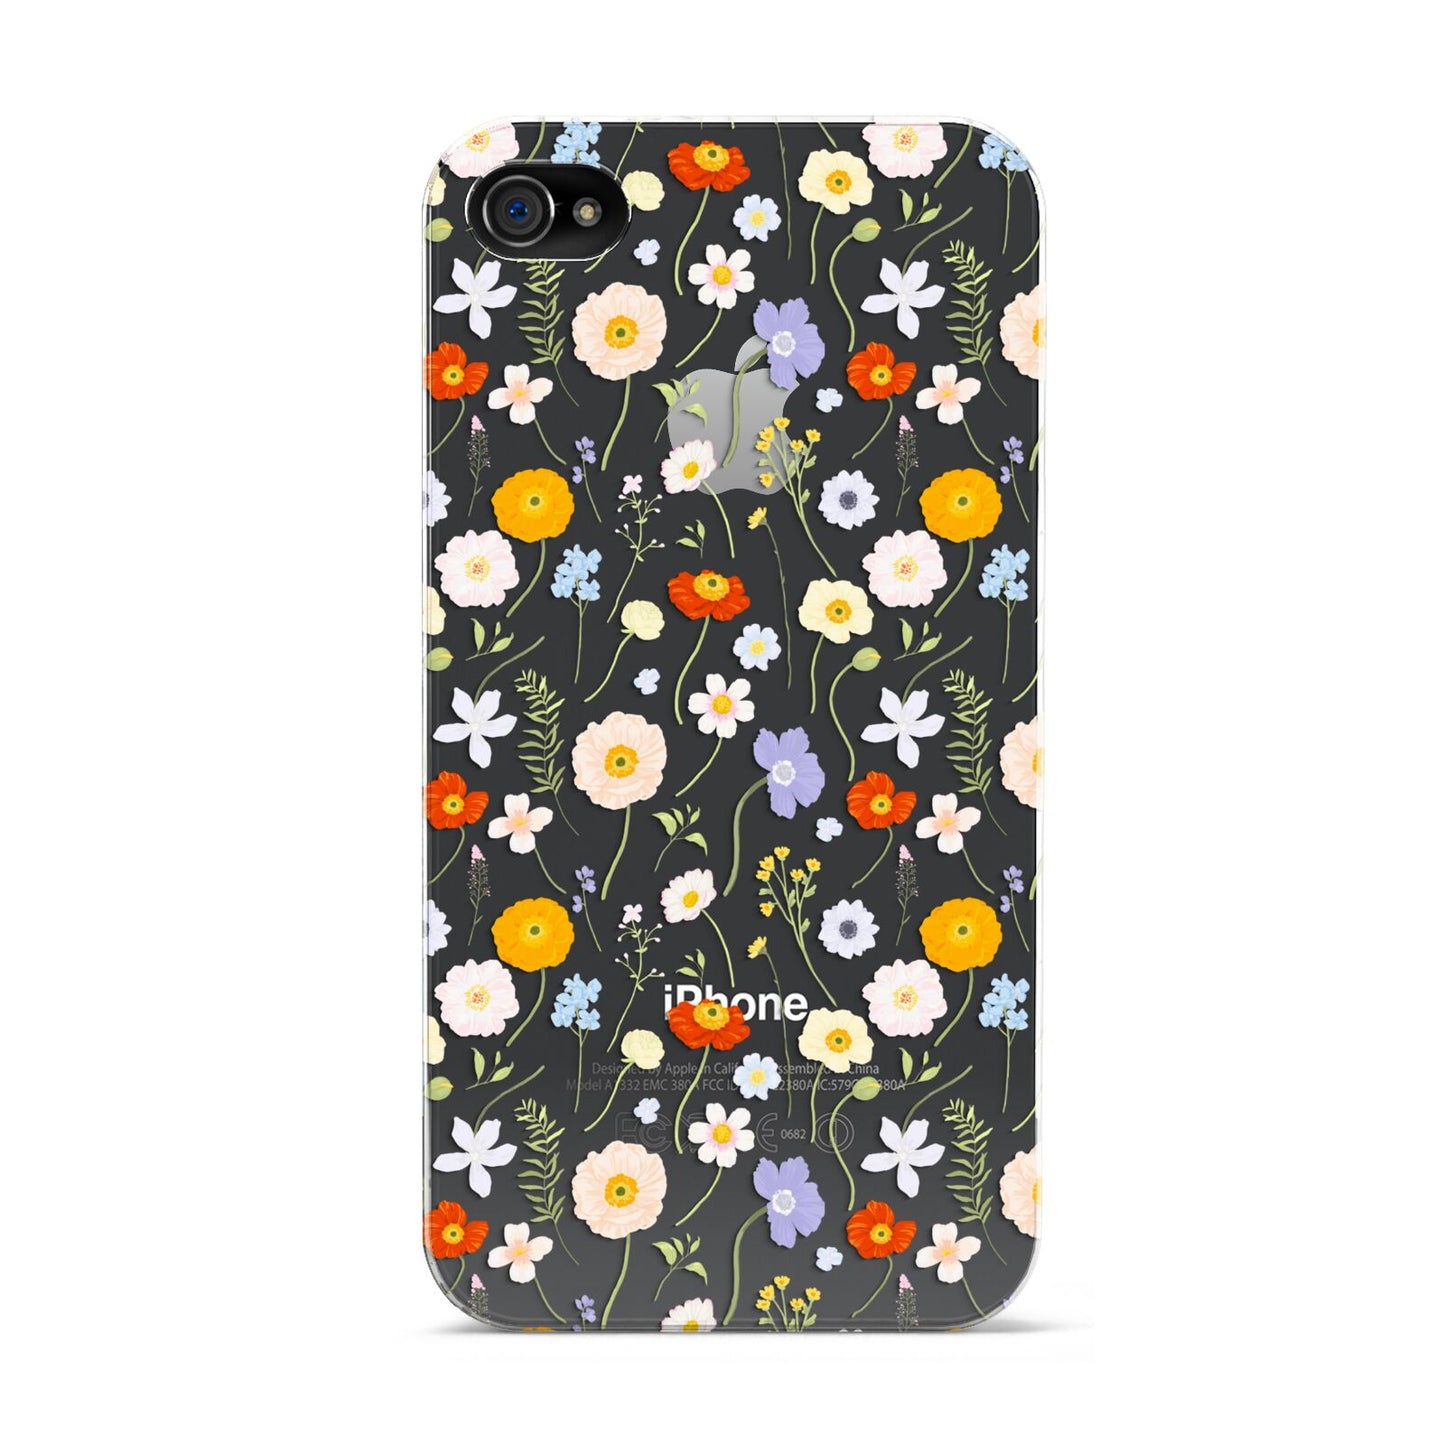 Wild Flower Apple iPhone 4s Case